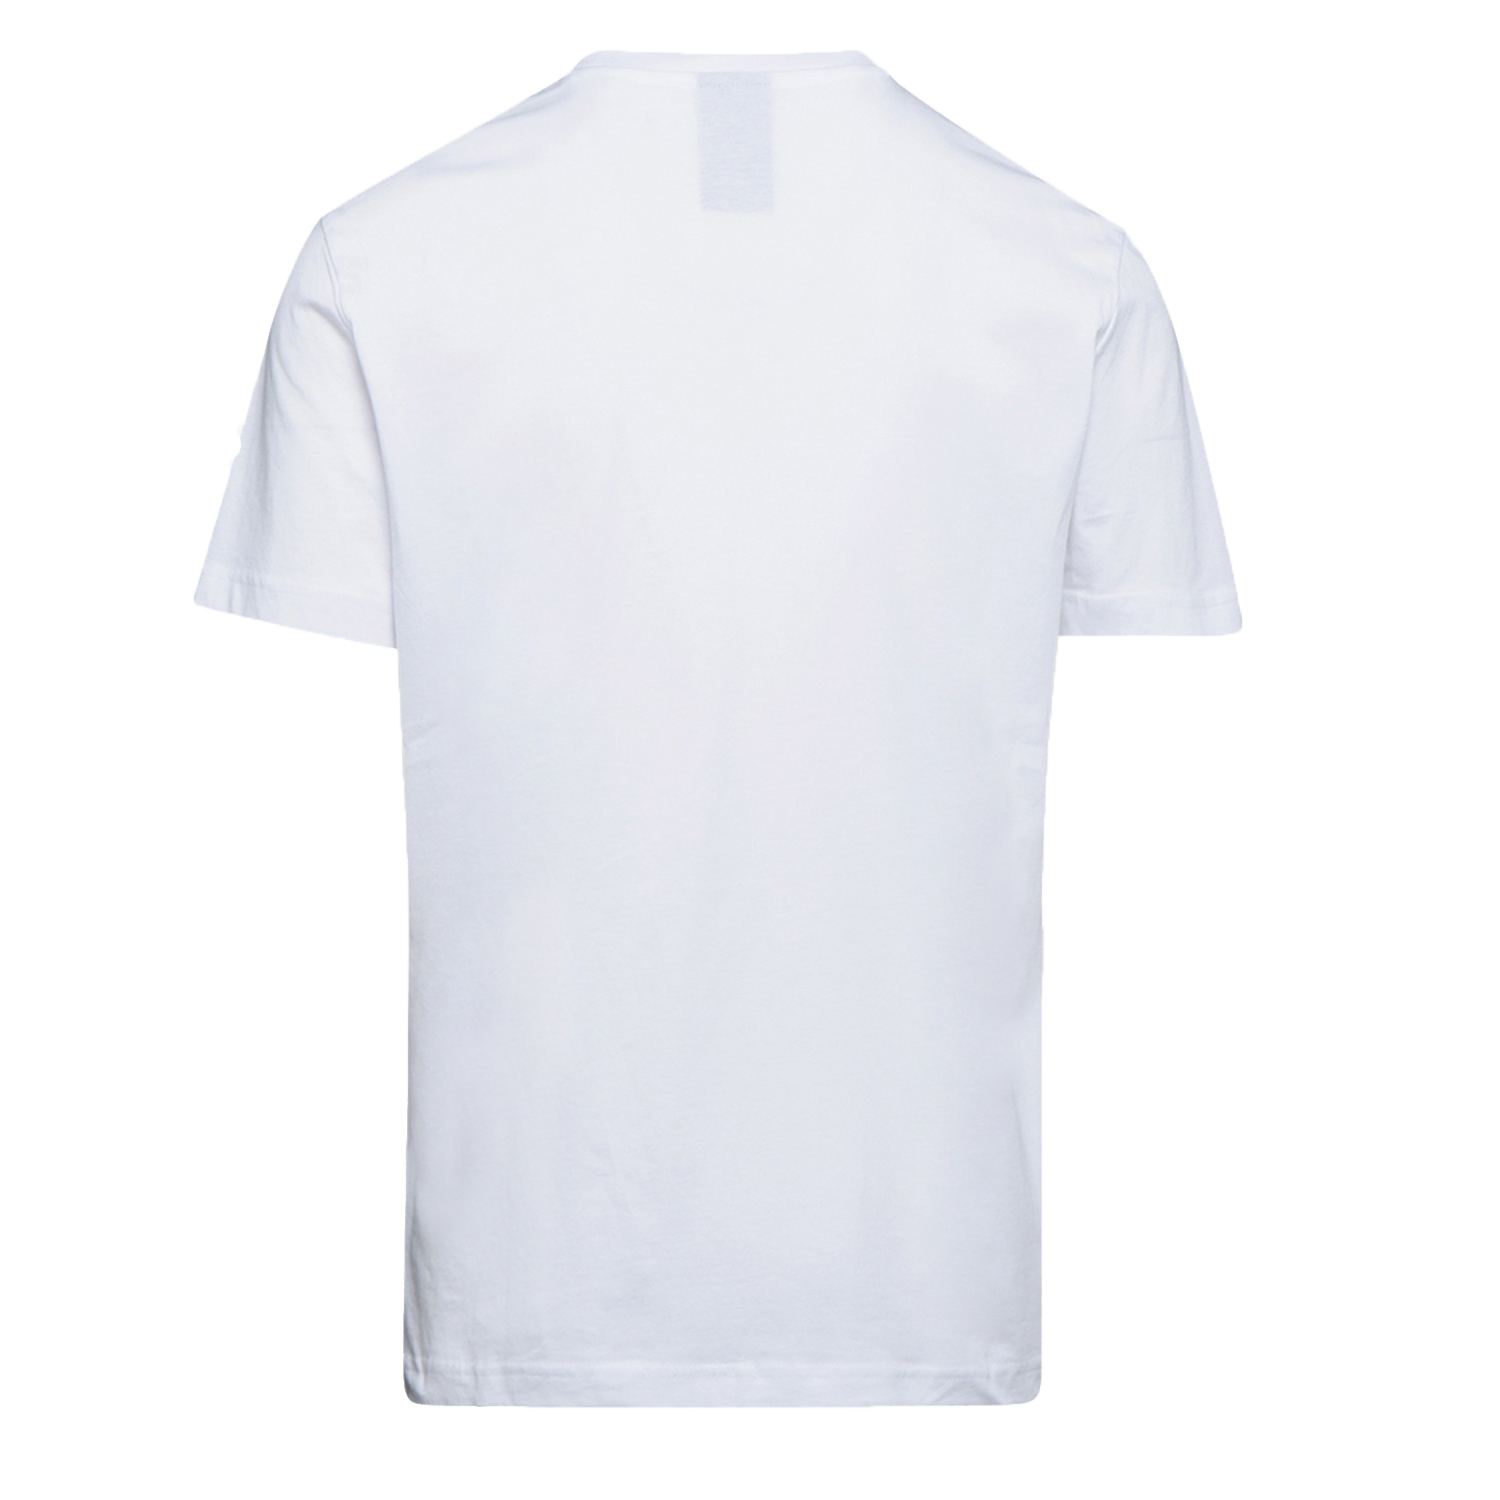 Tee-shirt de travail GRAPHIC ORGANIC à manches courtes blanc TL - DIADORA SPA - 702.176914